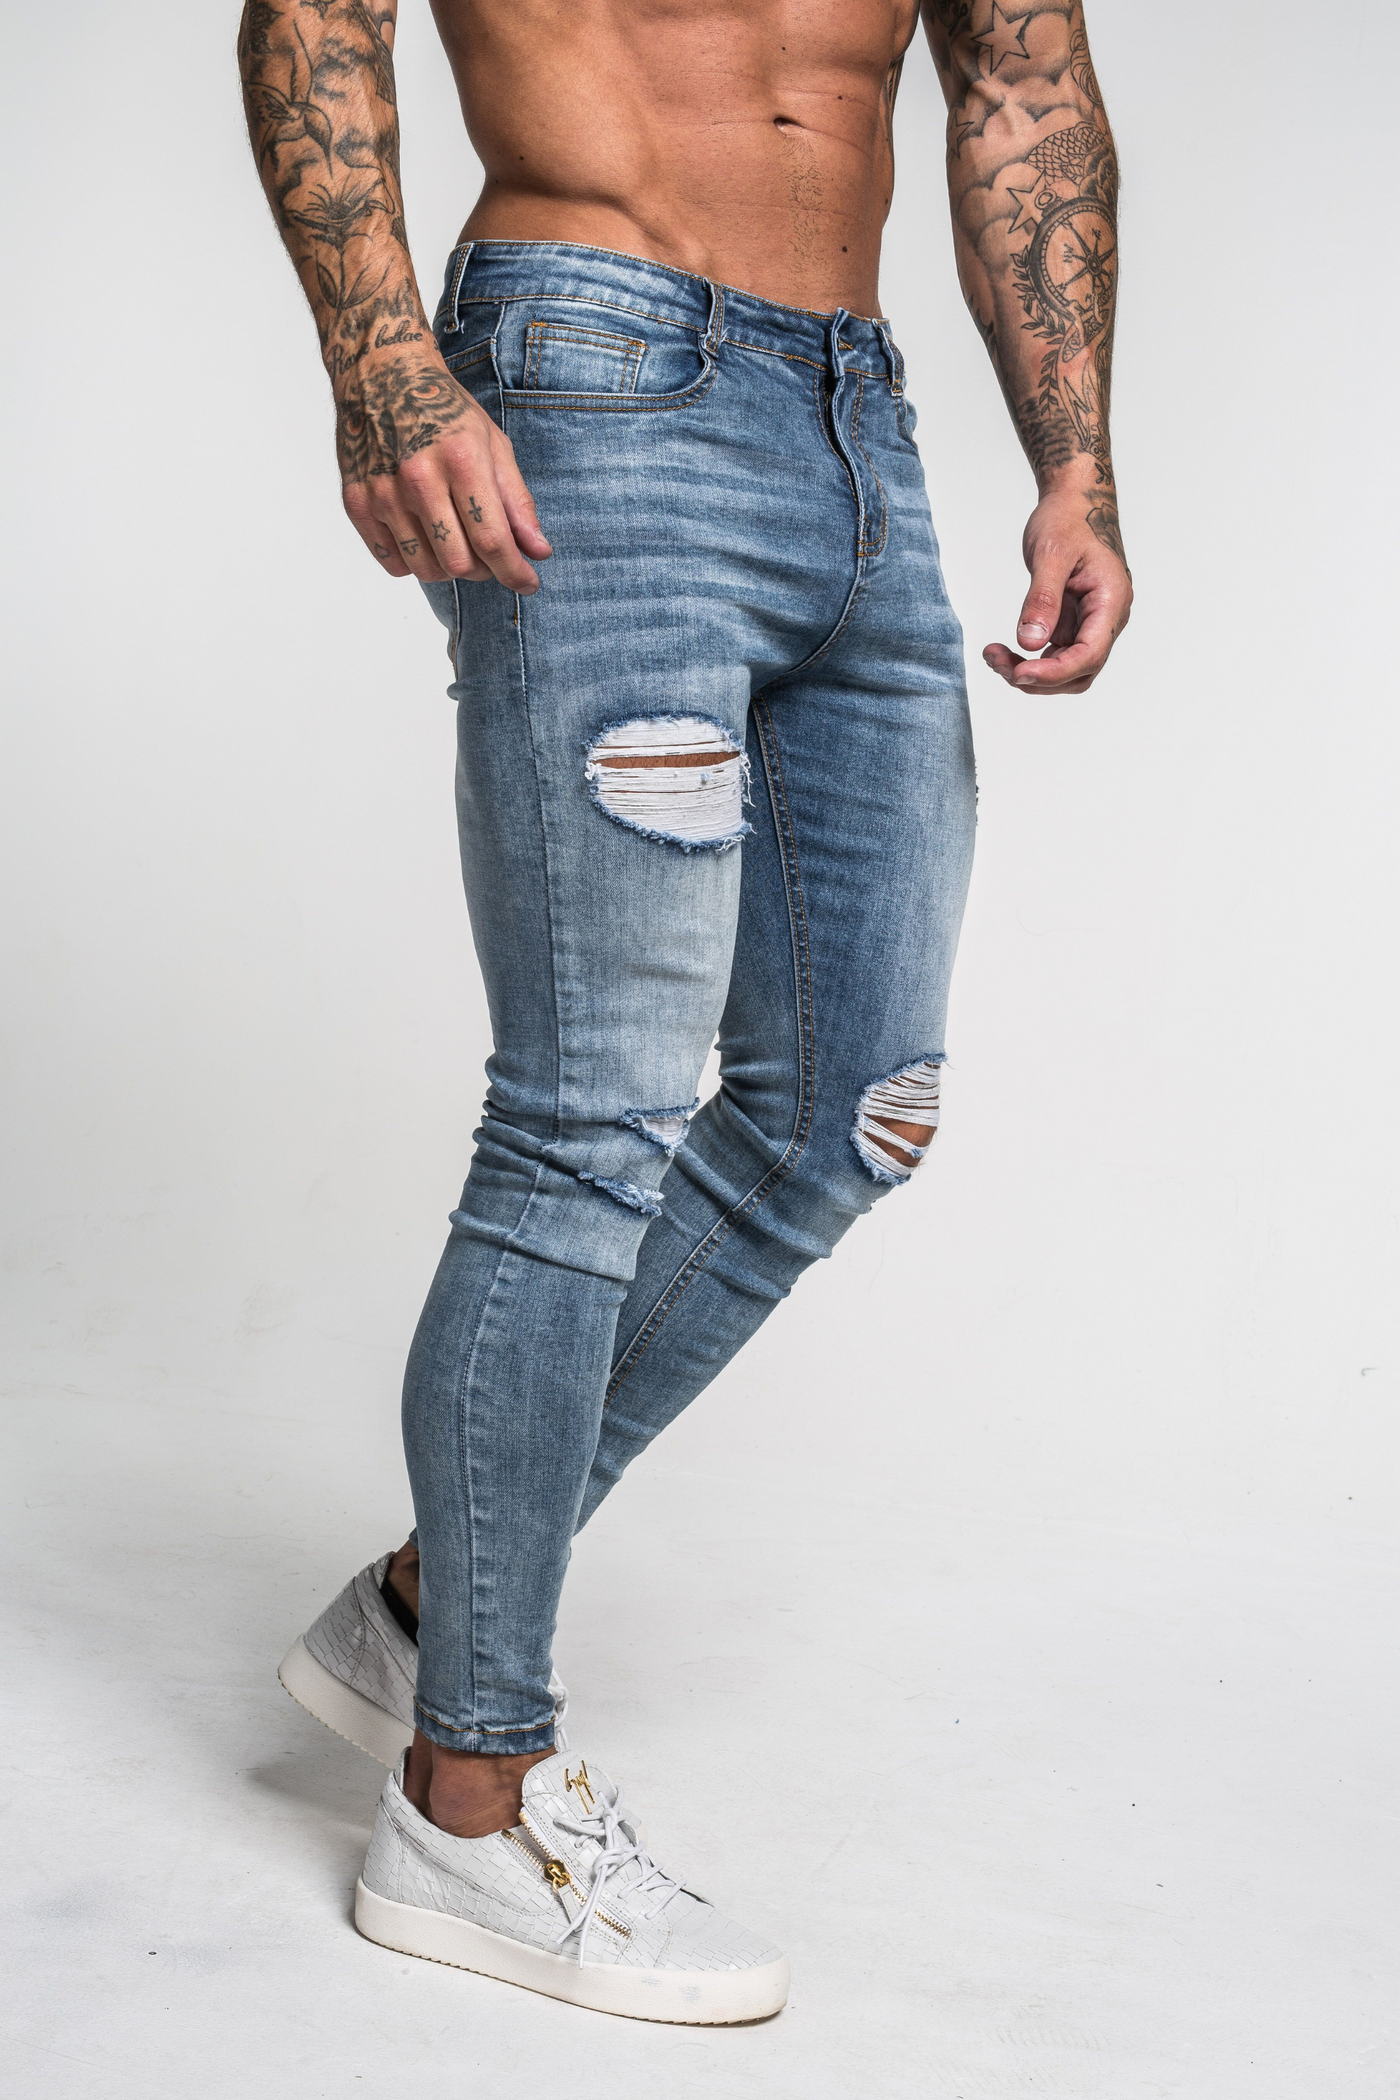 ICON. AMSTERDAM  Jeans et pantalons de qualité premium